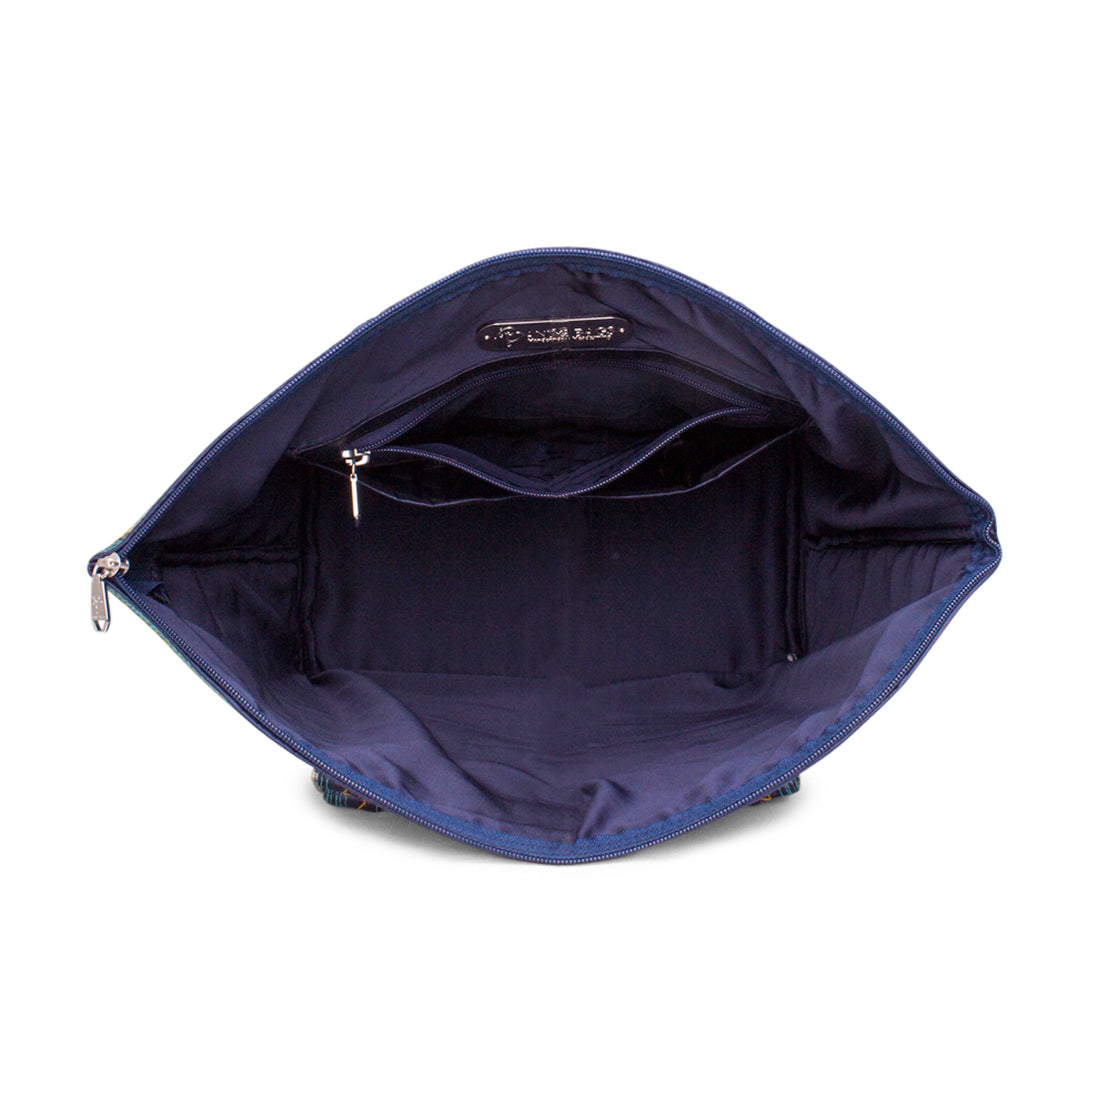 Rerebe Tote Bag Product Tote Banda Bags